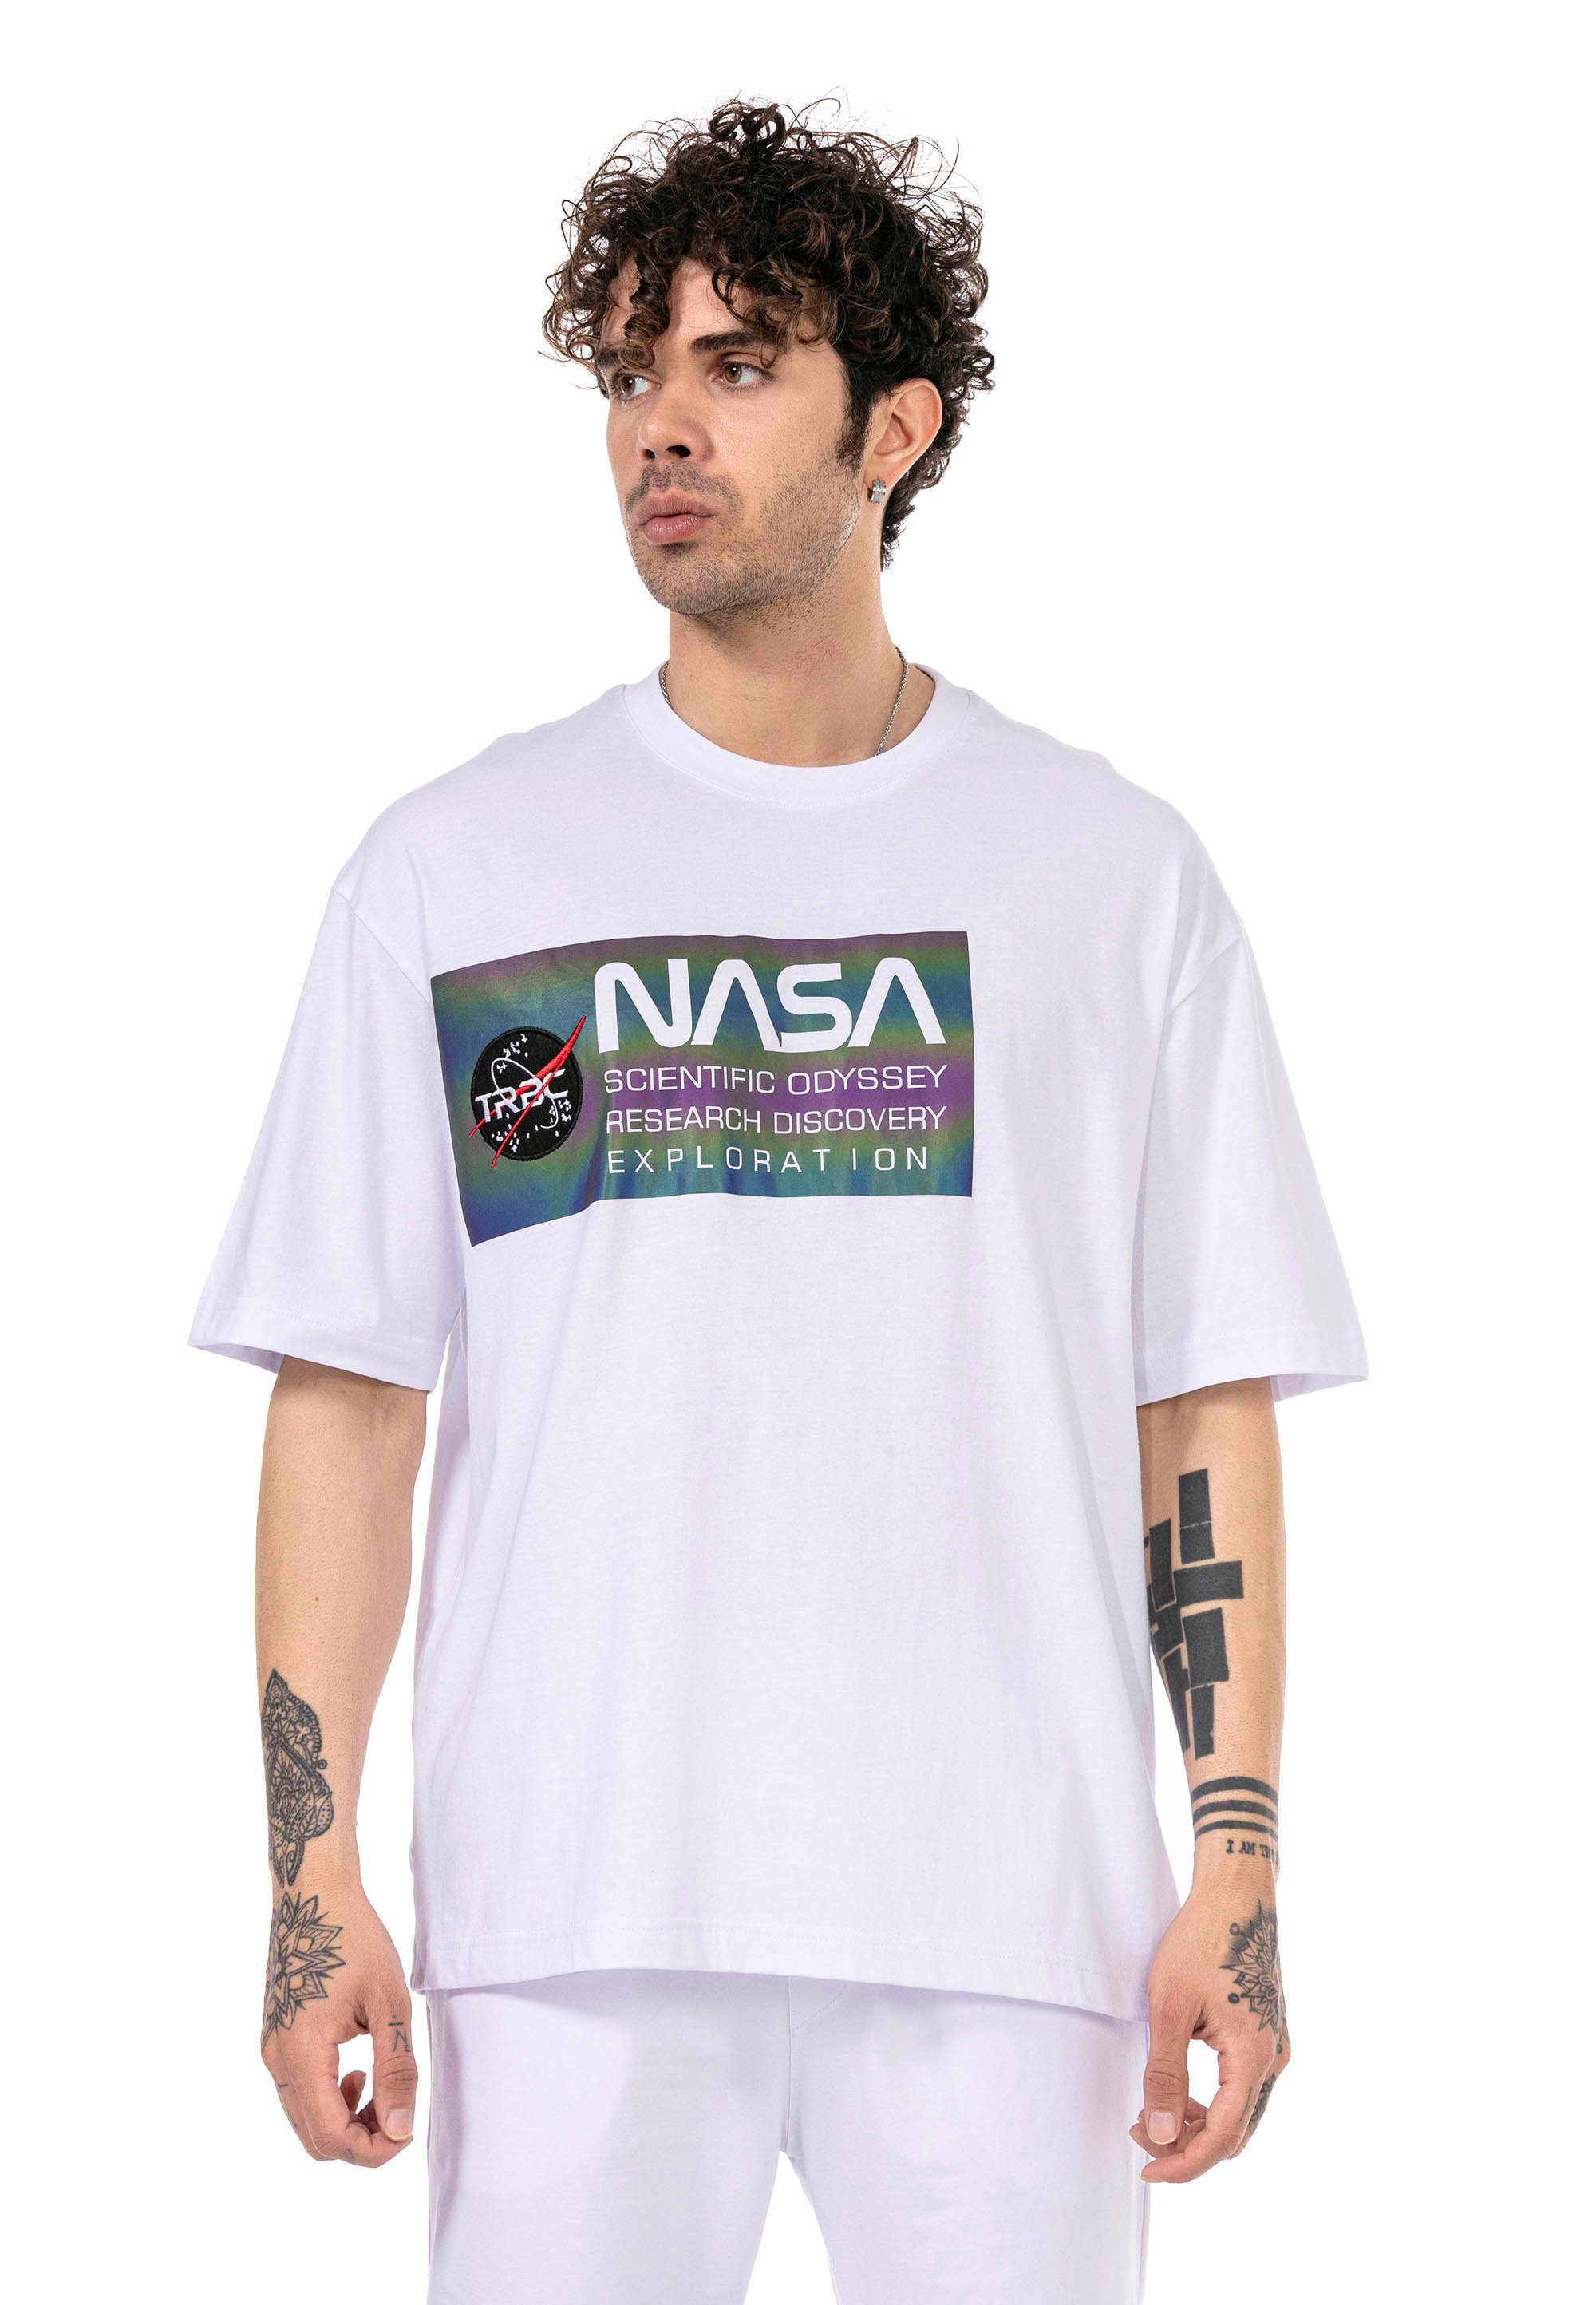 RedBridge T-Shirt weiß modischem NASA-Aufdruck Pasadena mit